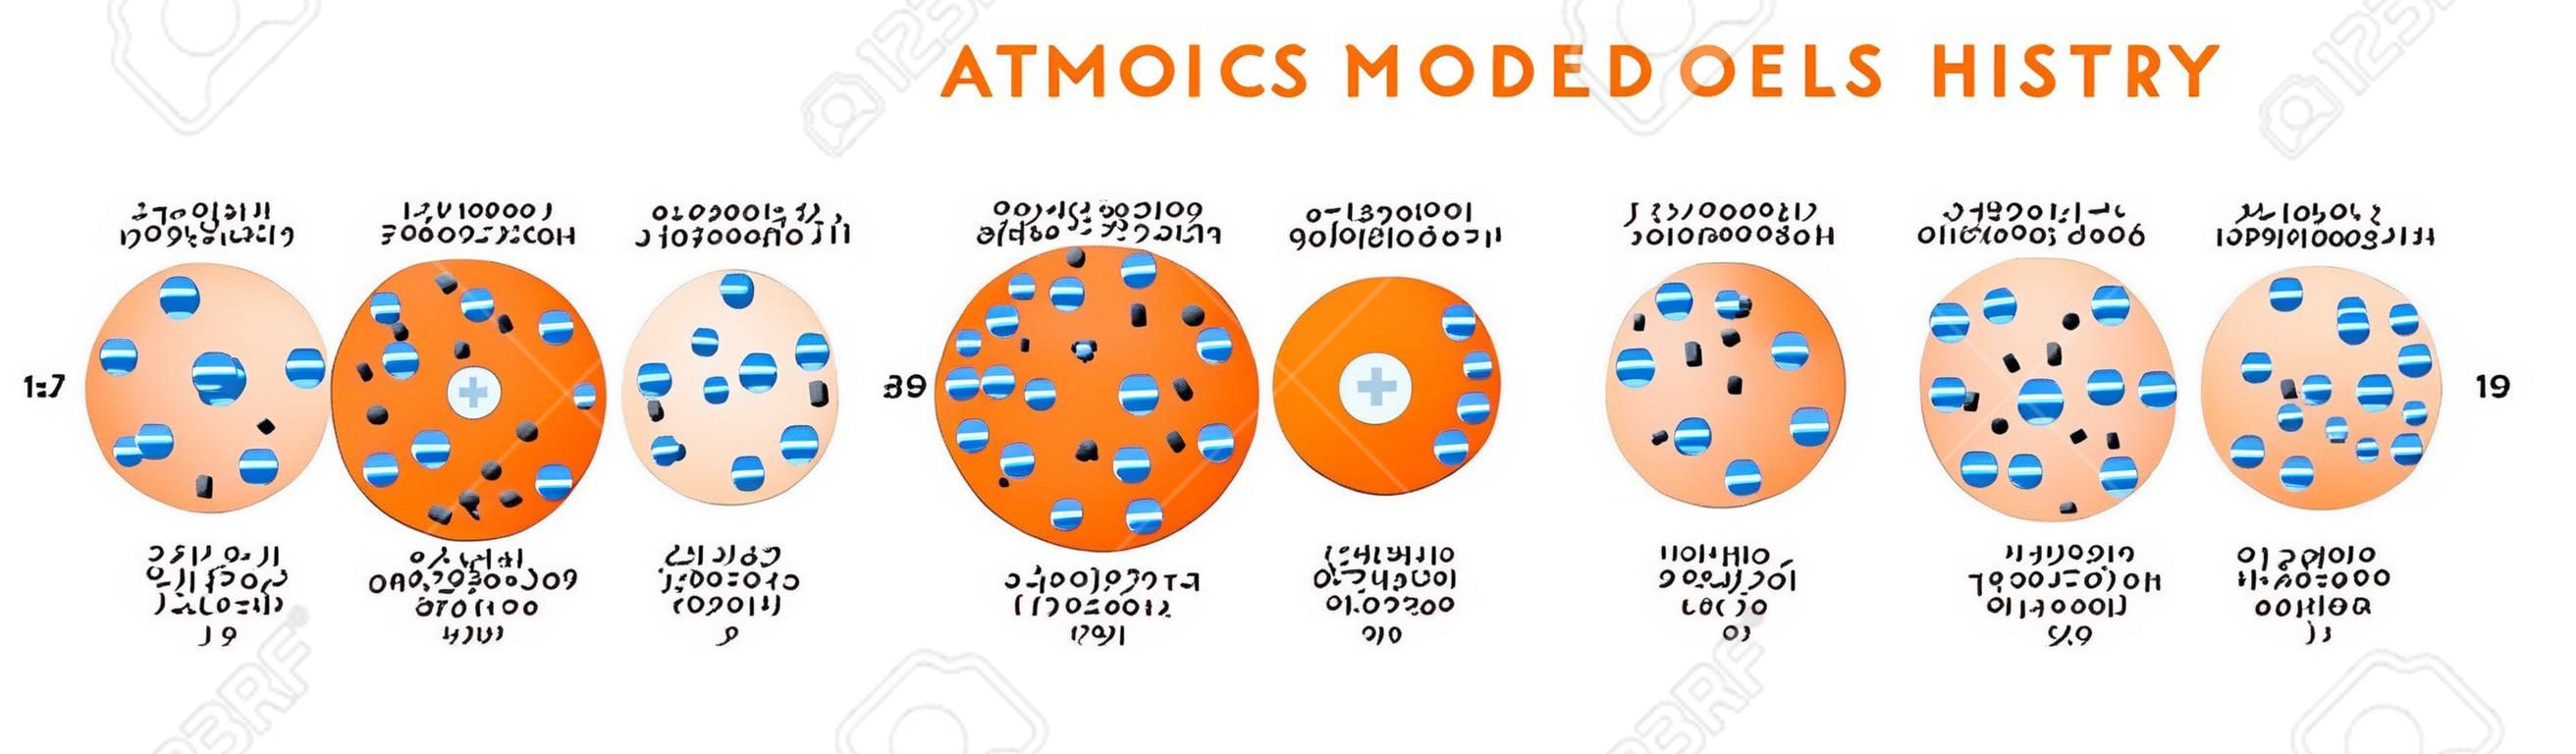 Diagramma infografico della storia dei modelli atomici tra cui Democritus Dalton Tomson Rutherford Bohr Schrodinger strutture atomiche per il vettore poster di educazione scientifica chimica